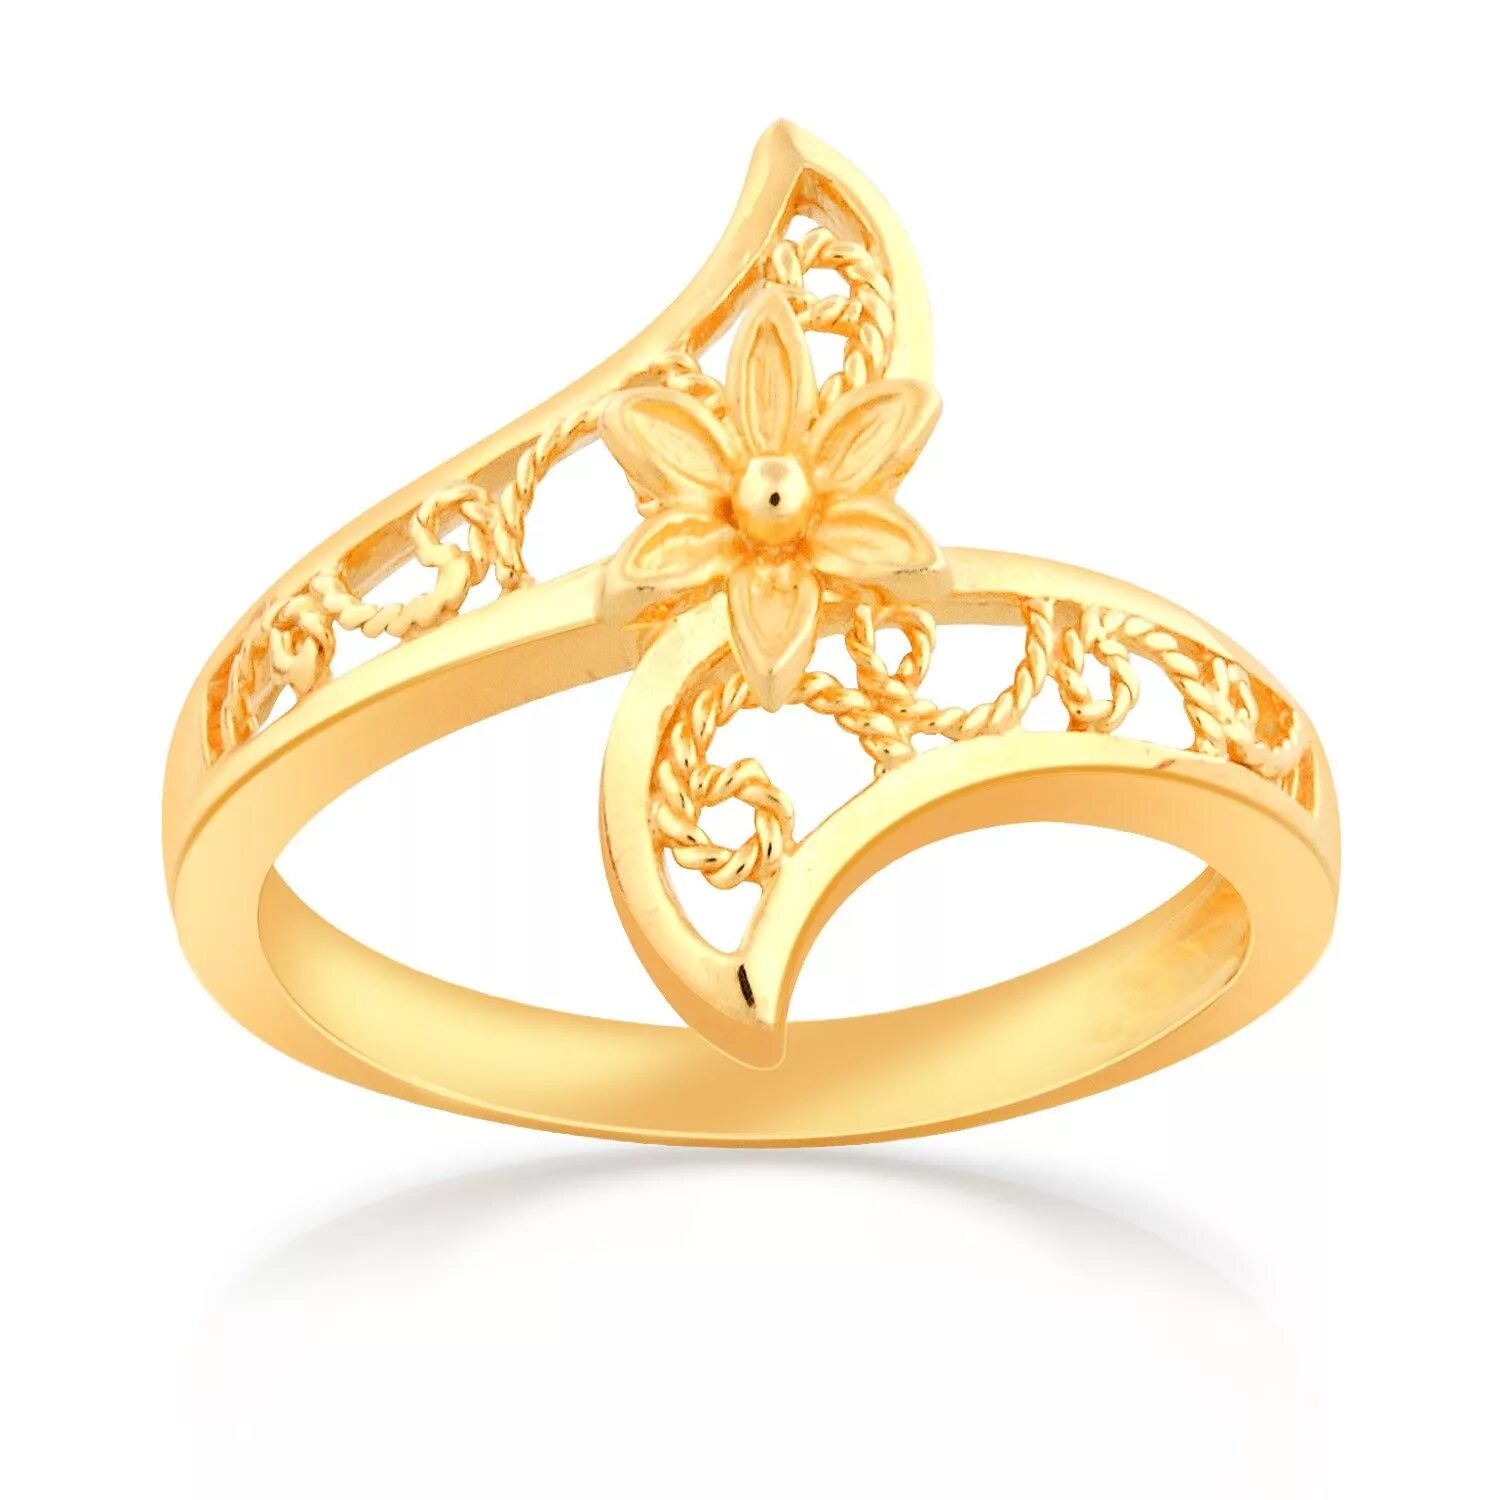 Gold кольца. Кольцо золото. Золотые кольца женские с камнями. Золотое кольцо цветок. Кольцо золото без камней.